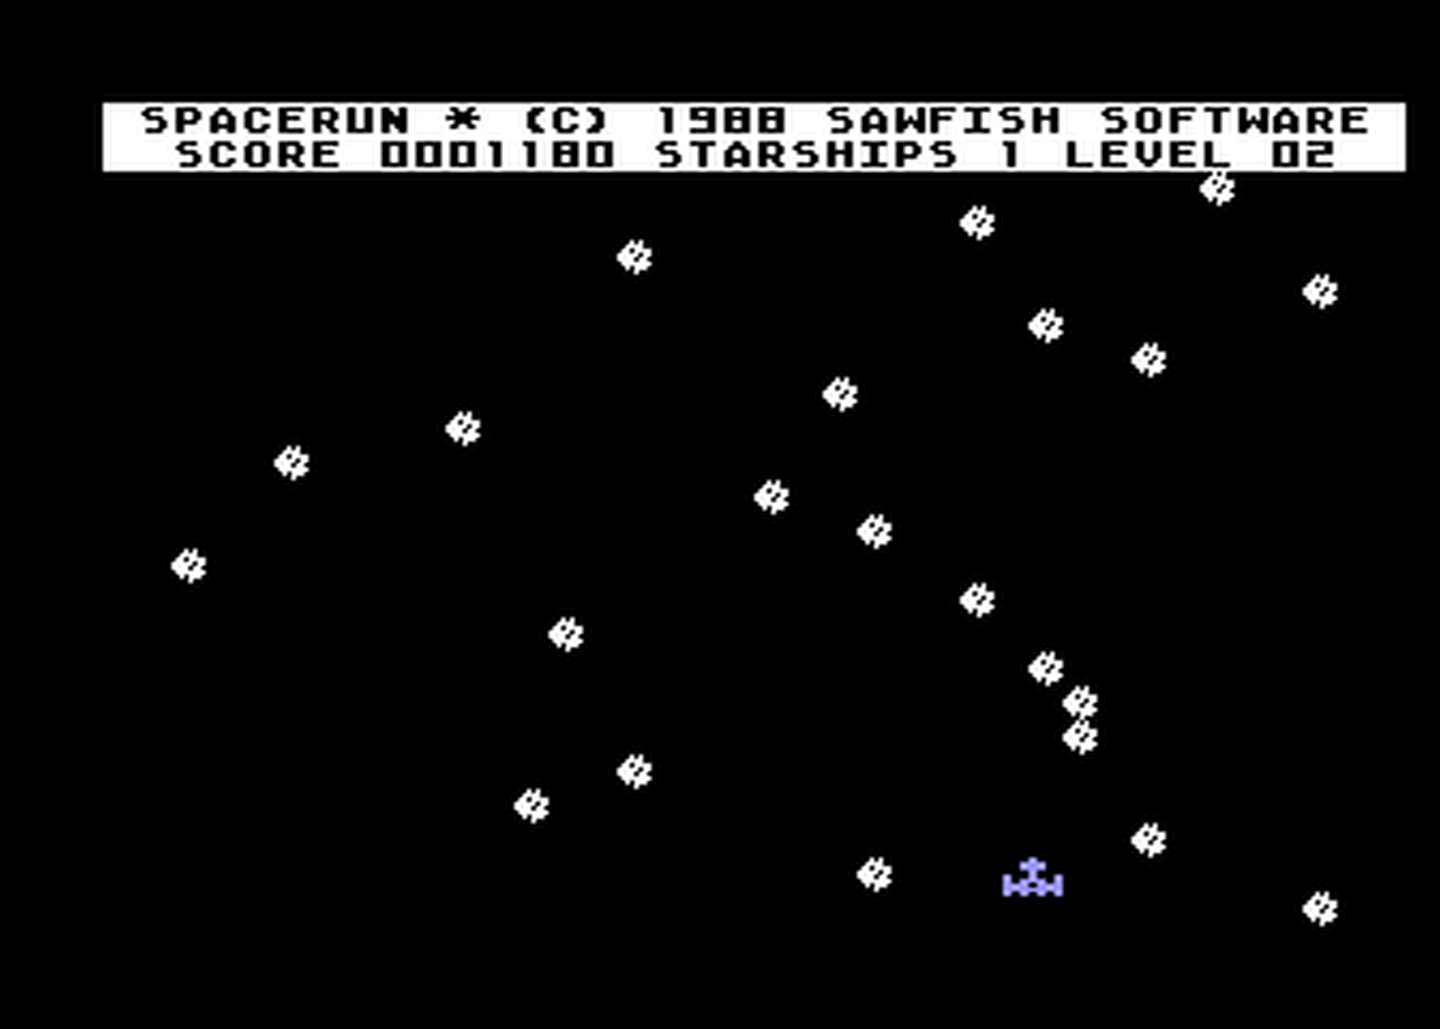 Atari GameBase Spacerun Sawfish_Software 1988